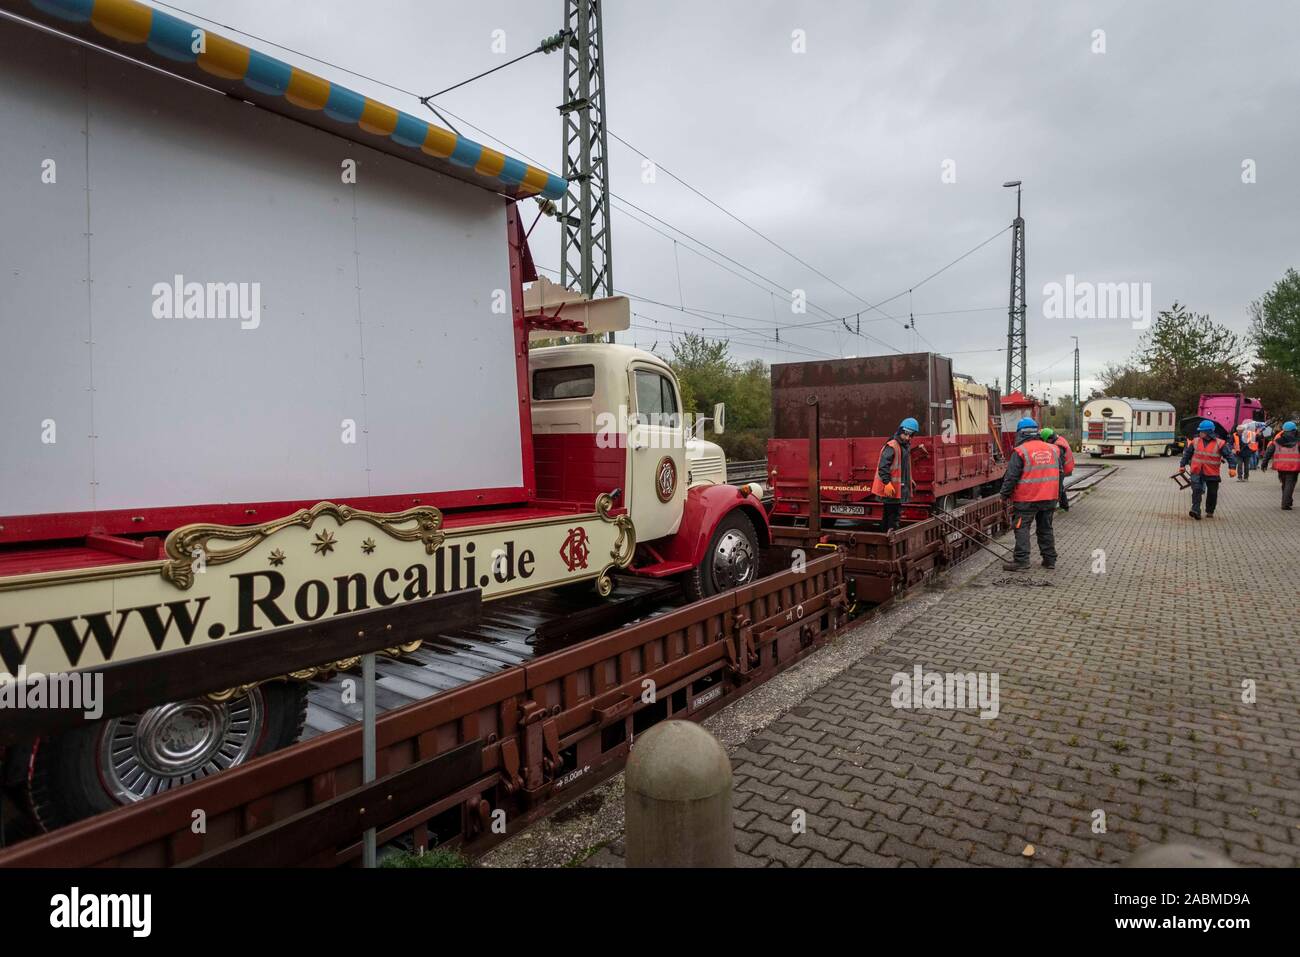 Le cirque de la flotte Roncallli arrivera sur un train spécial à Munich (Haute-Bavière) le mercredi, 9 octobre 2019. [Traduction automatique] Banque D'Images